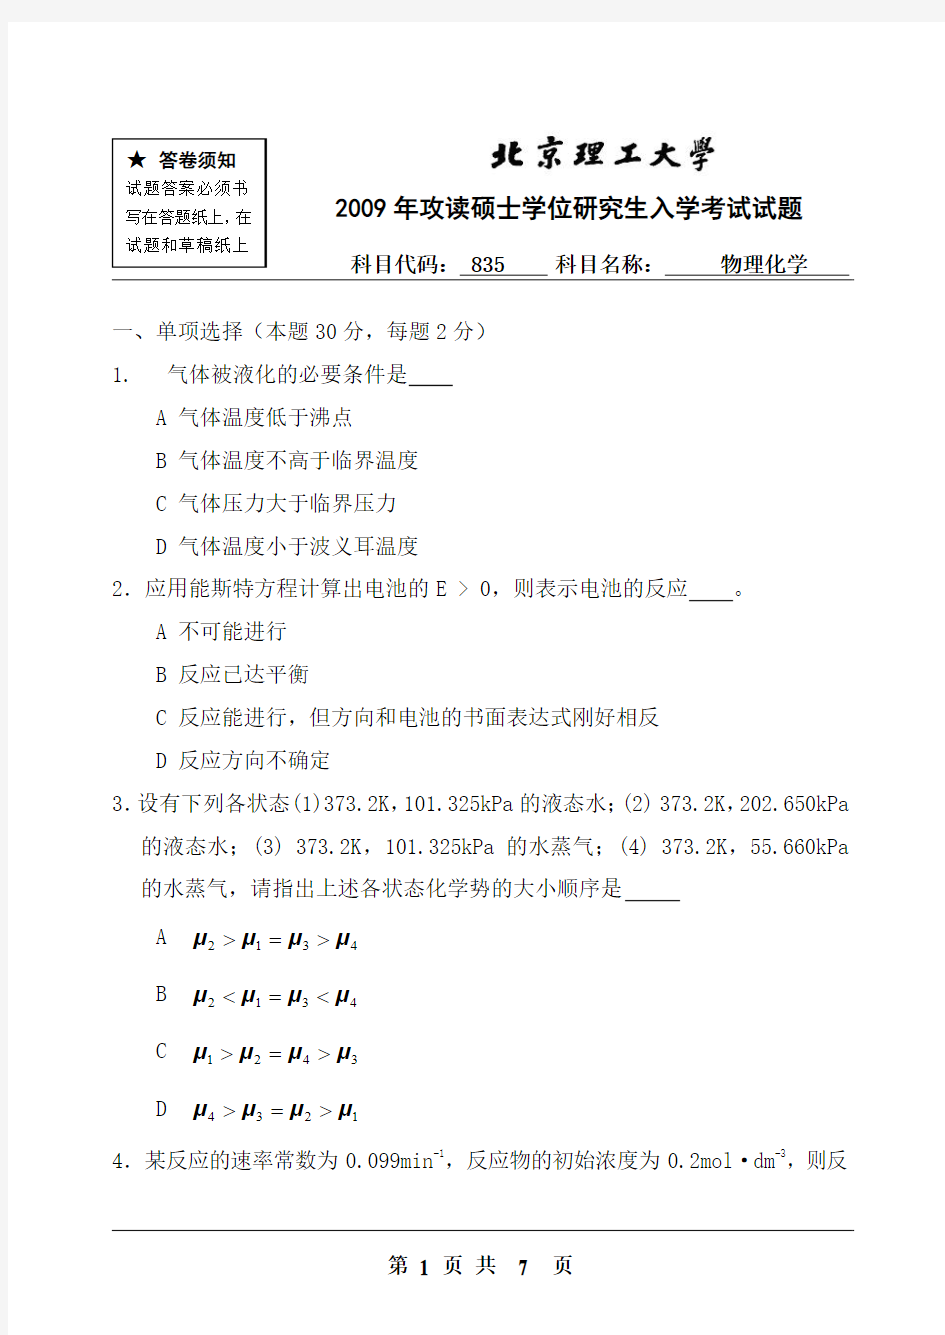 北京理工大学2009年硕士研究生入学考试试题(835物理化学)